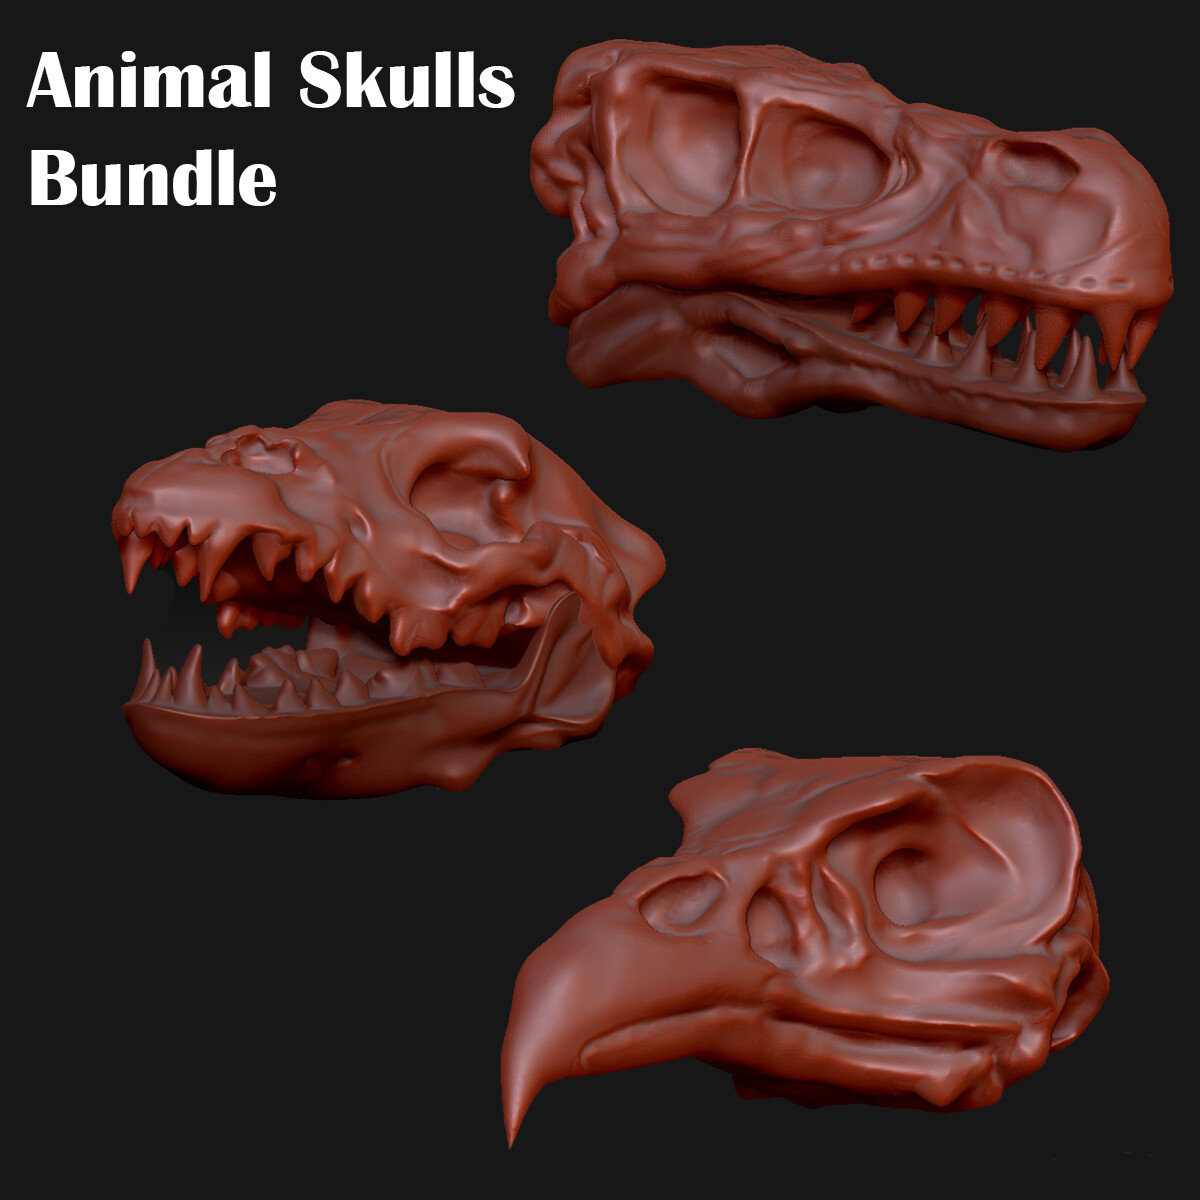 Animal Skulls - ArtStation